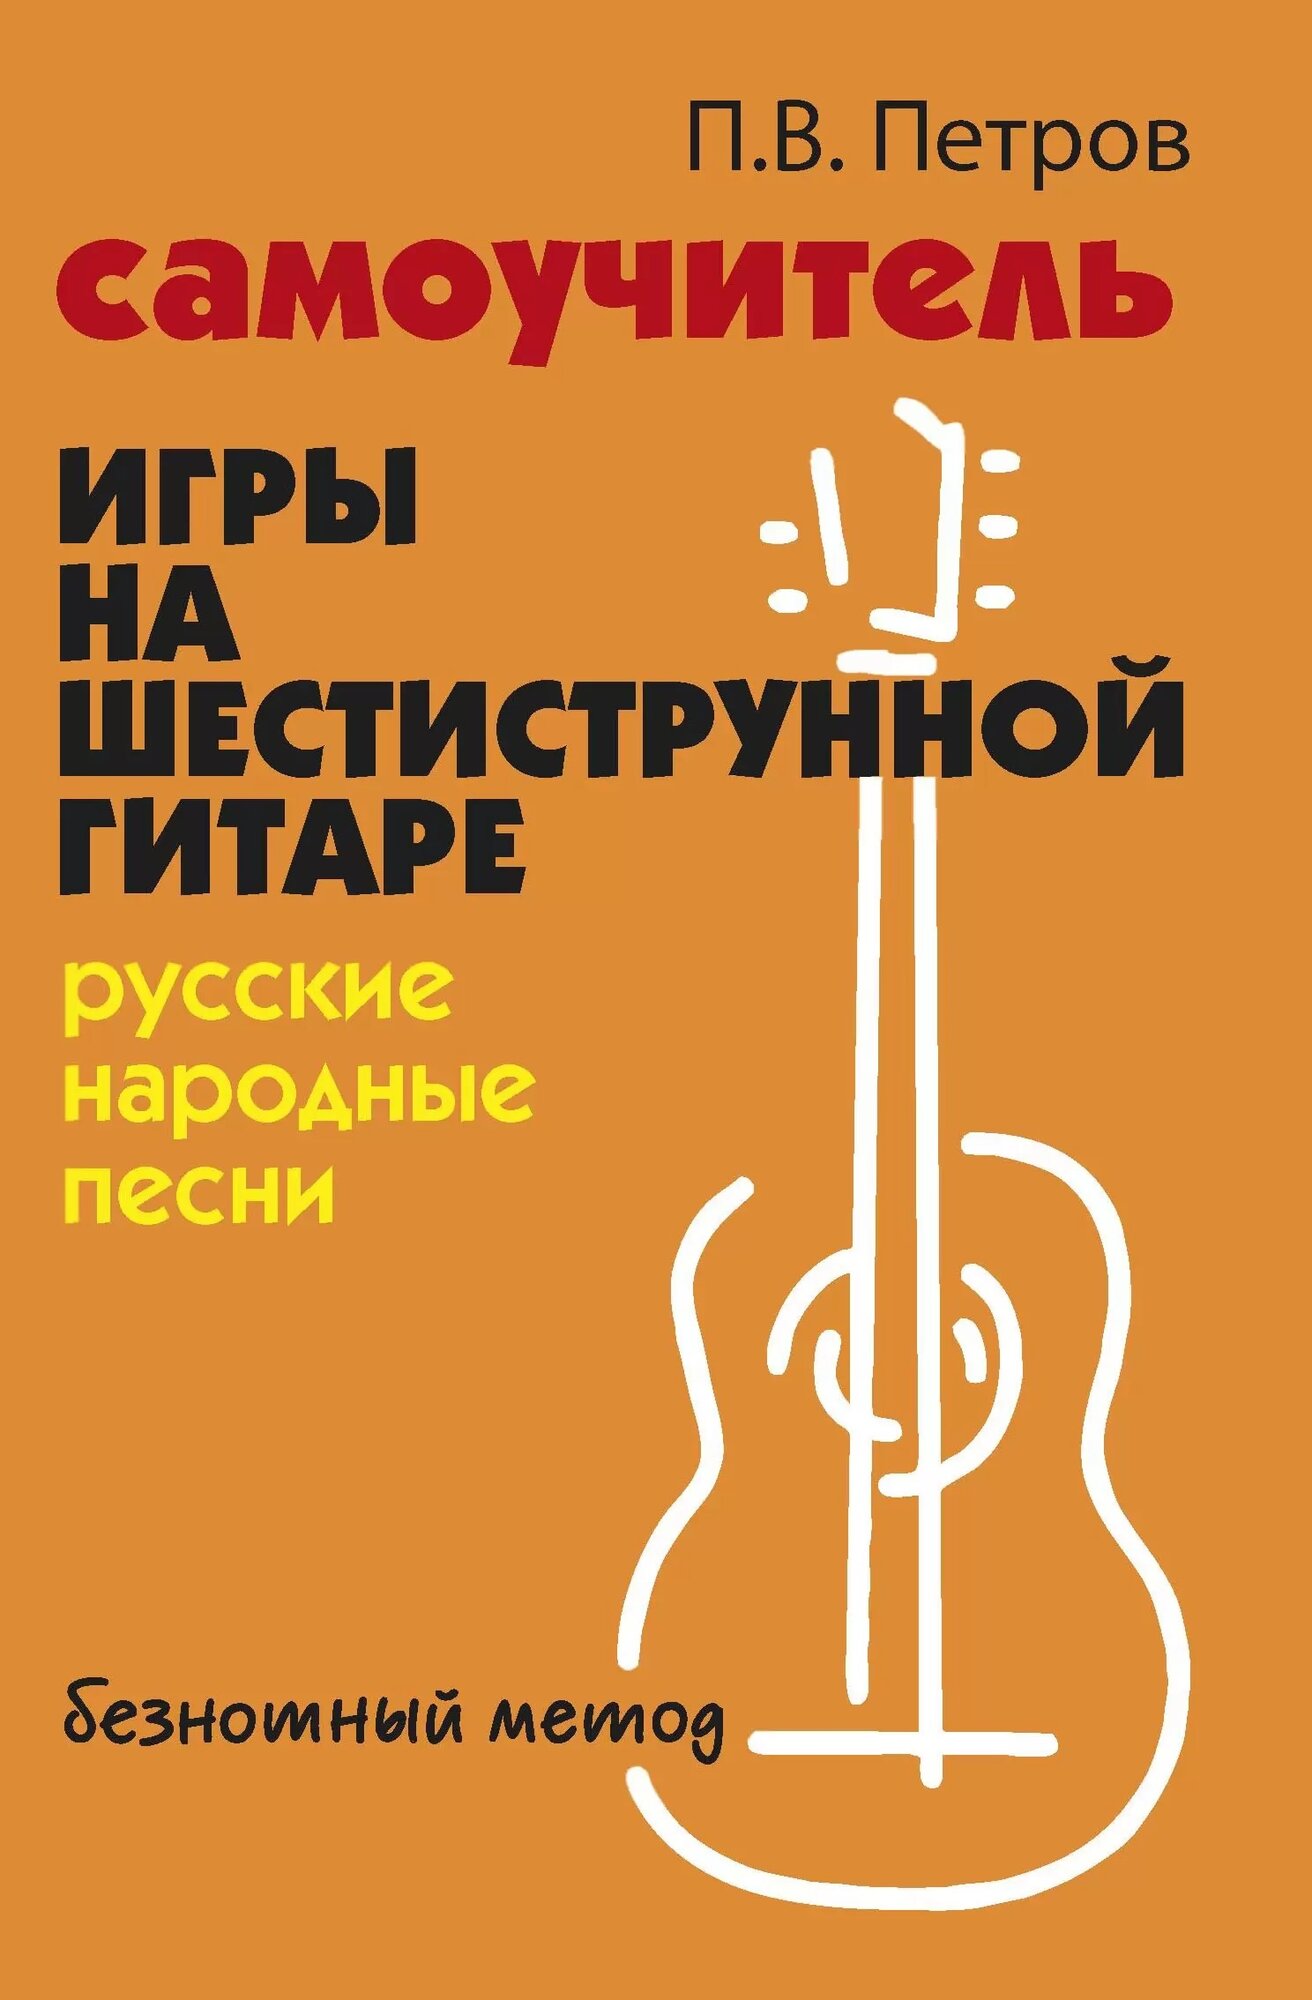 Пособие Самоучитель игры на шестиструнной гитаре русские народные песни безнотный метод Петров ПВ 0+